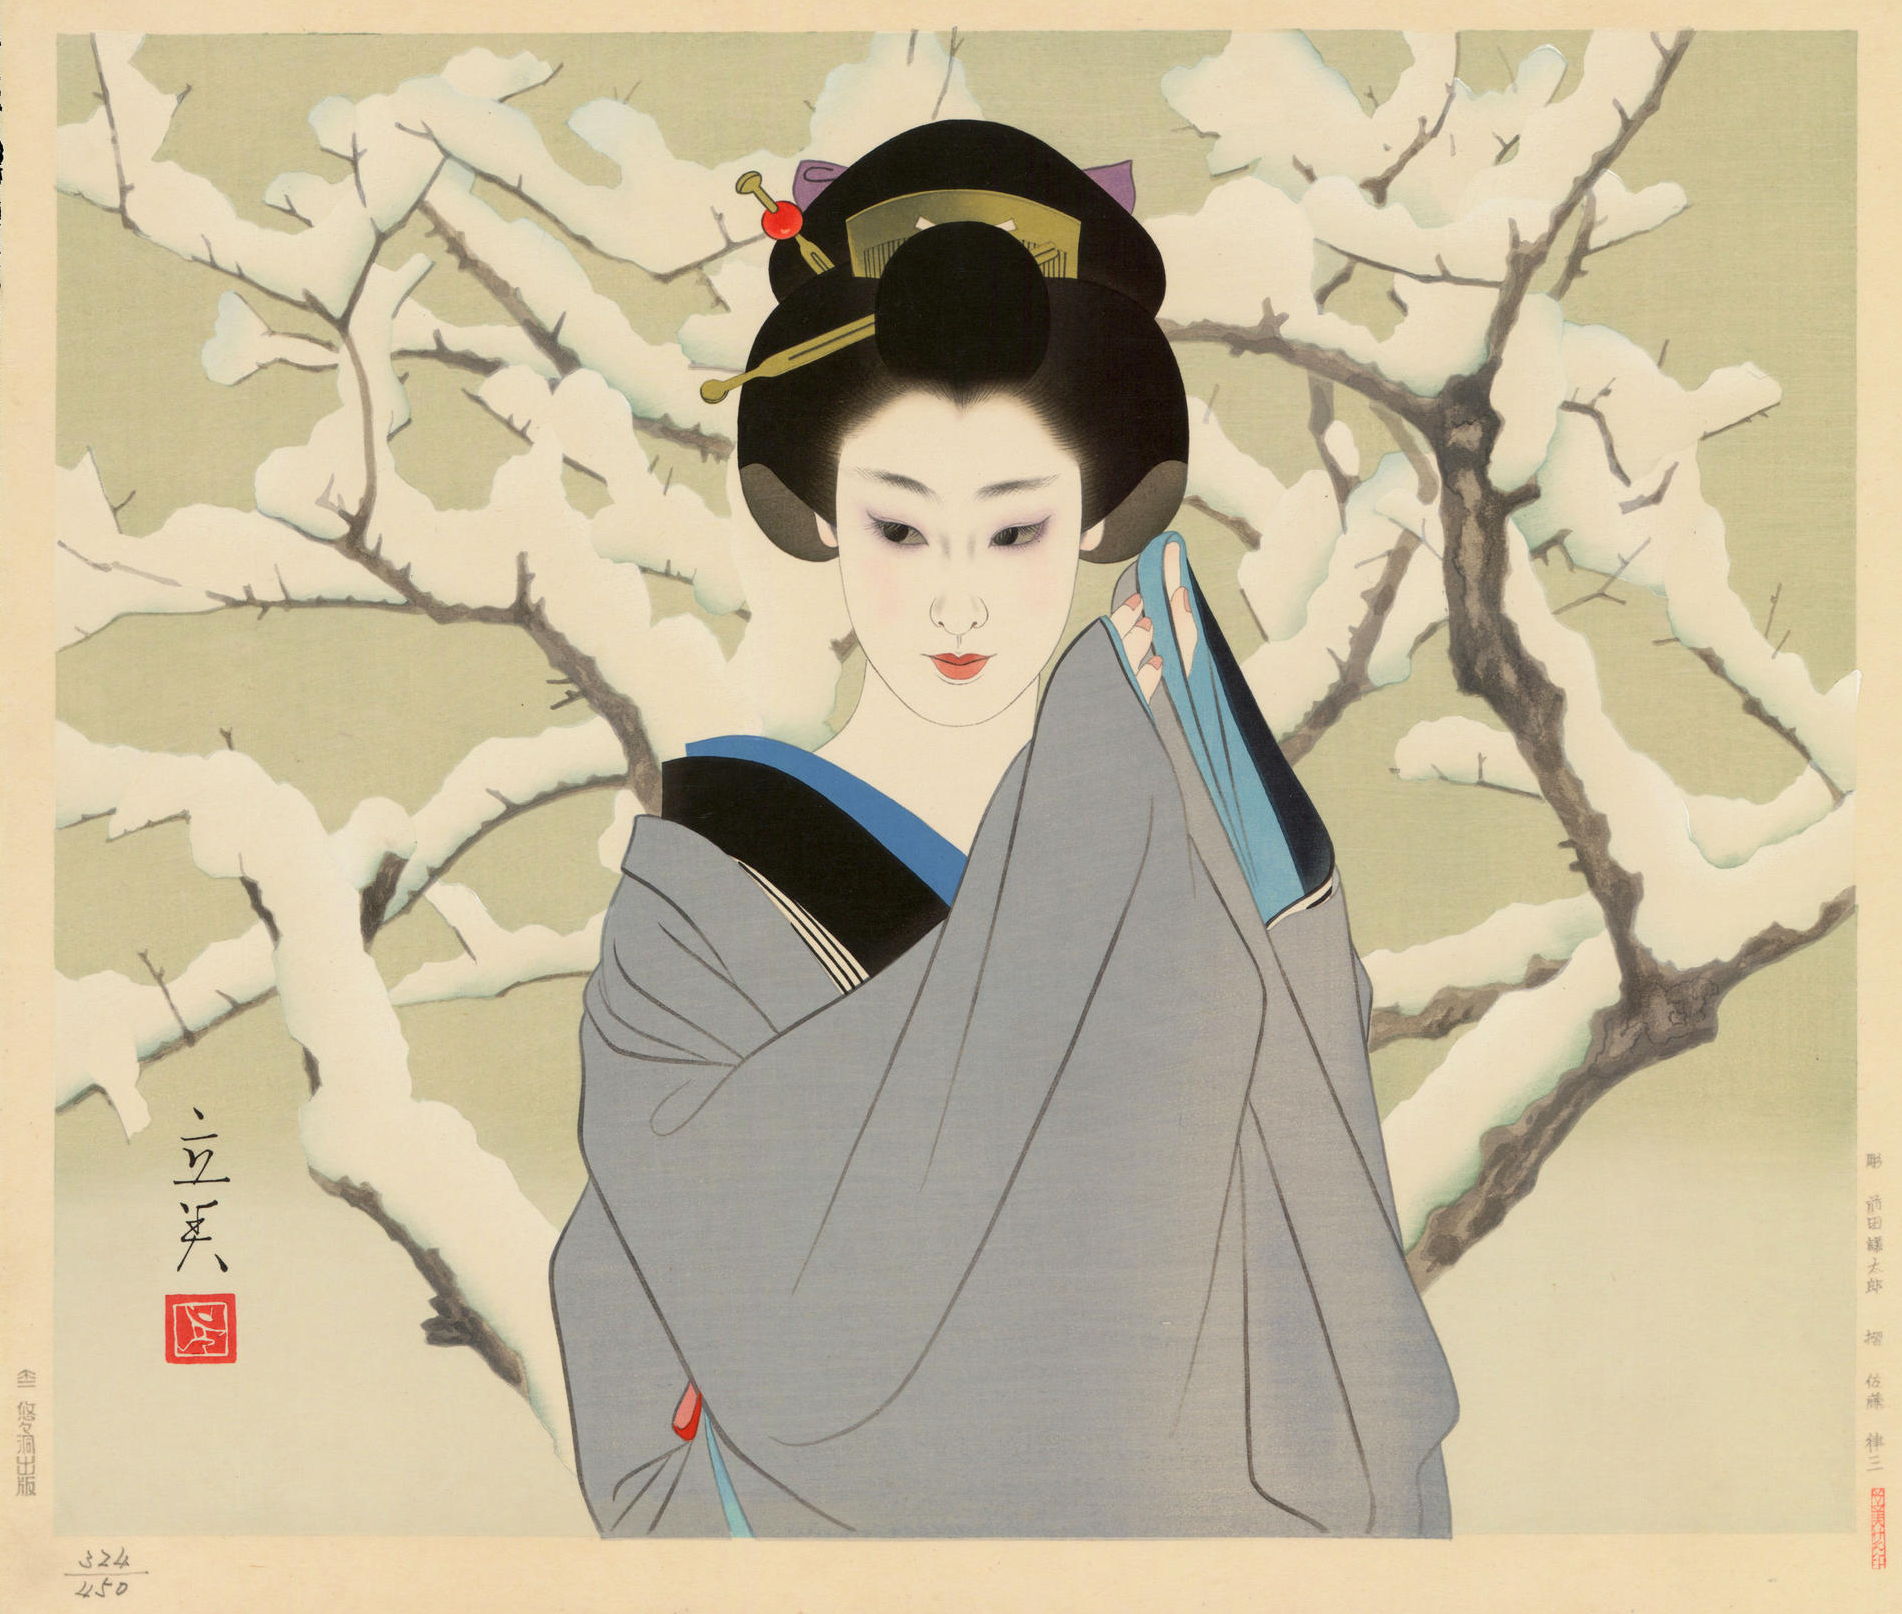 Shimura Tatsumi “Yuki (Snow)” 1976 woodblock print